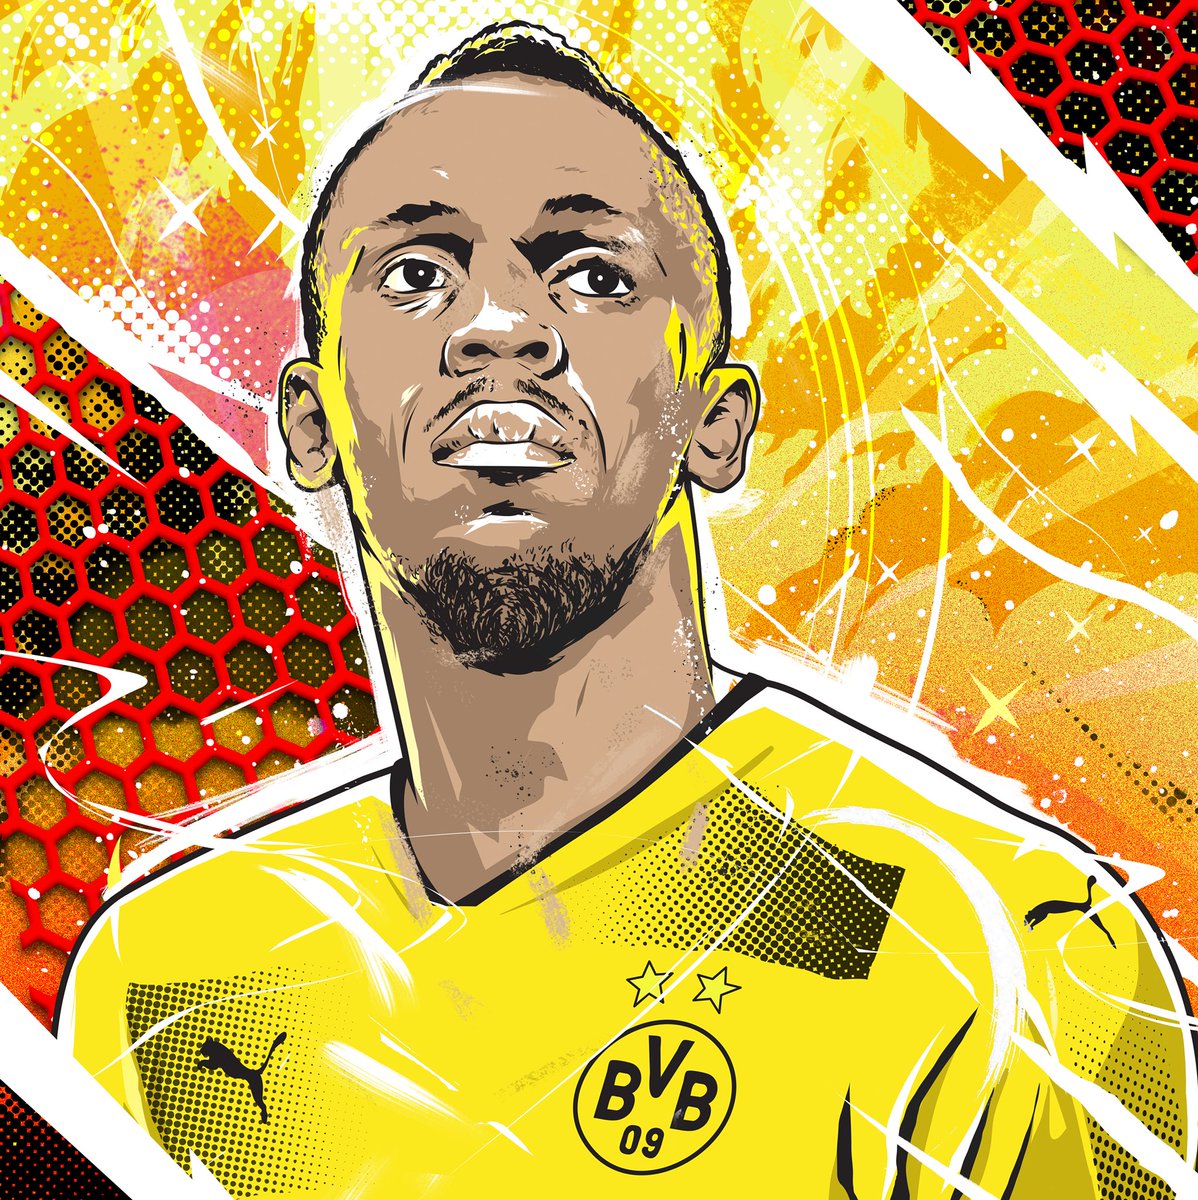 Aposentado das pistas, Bolt treina com o Borussia Dortmund nesta sexta-feira